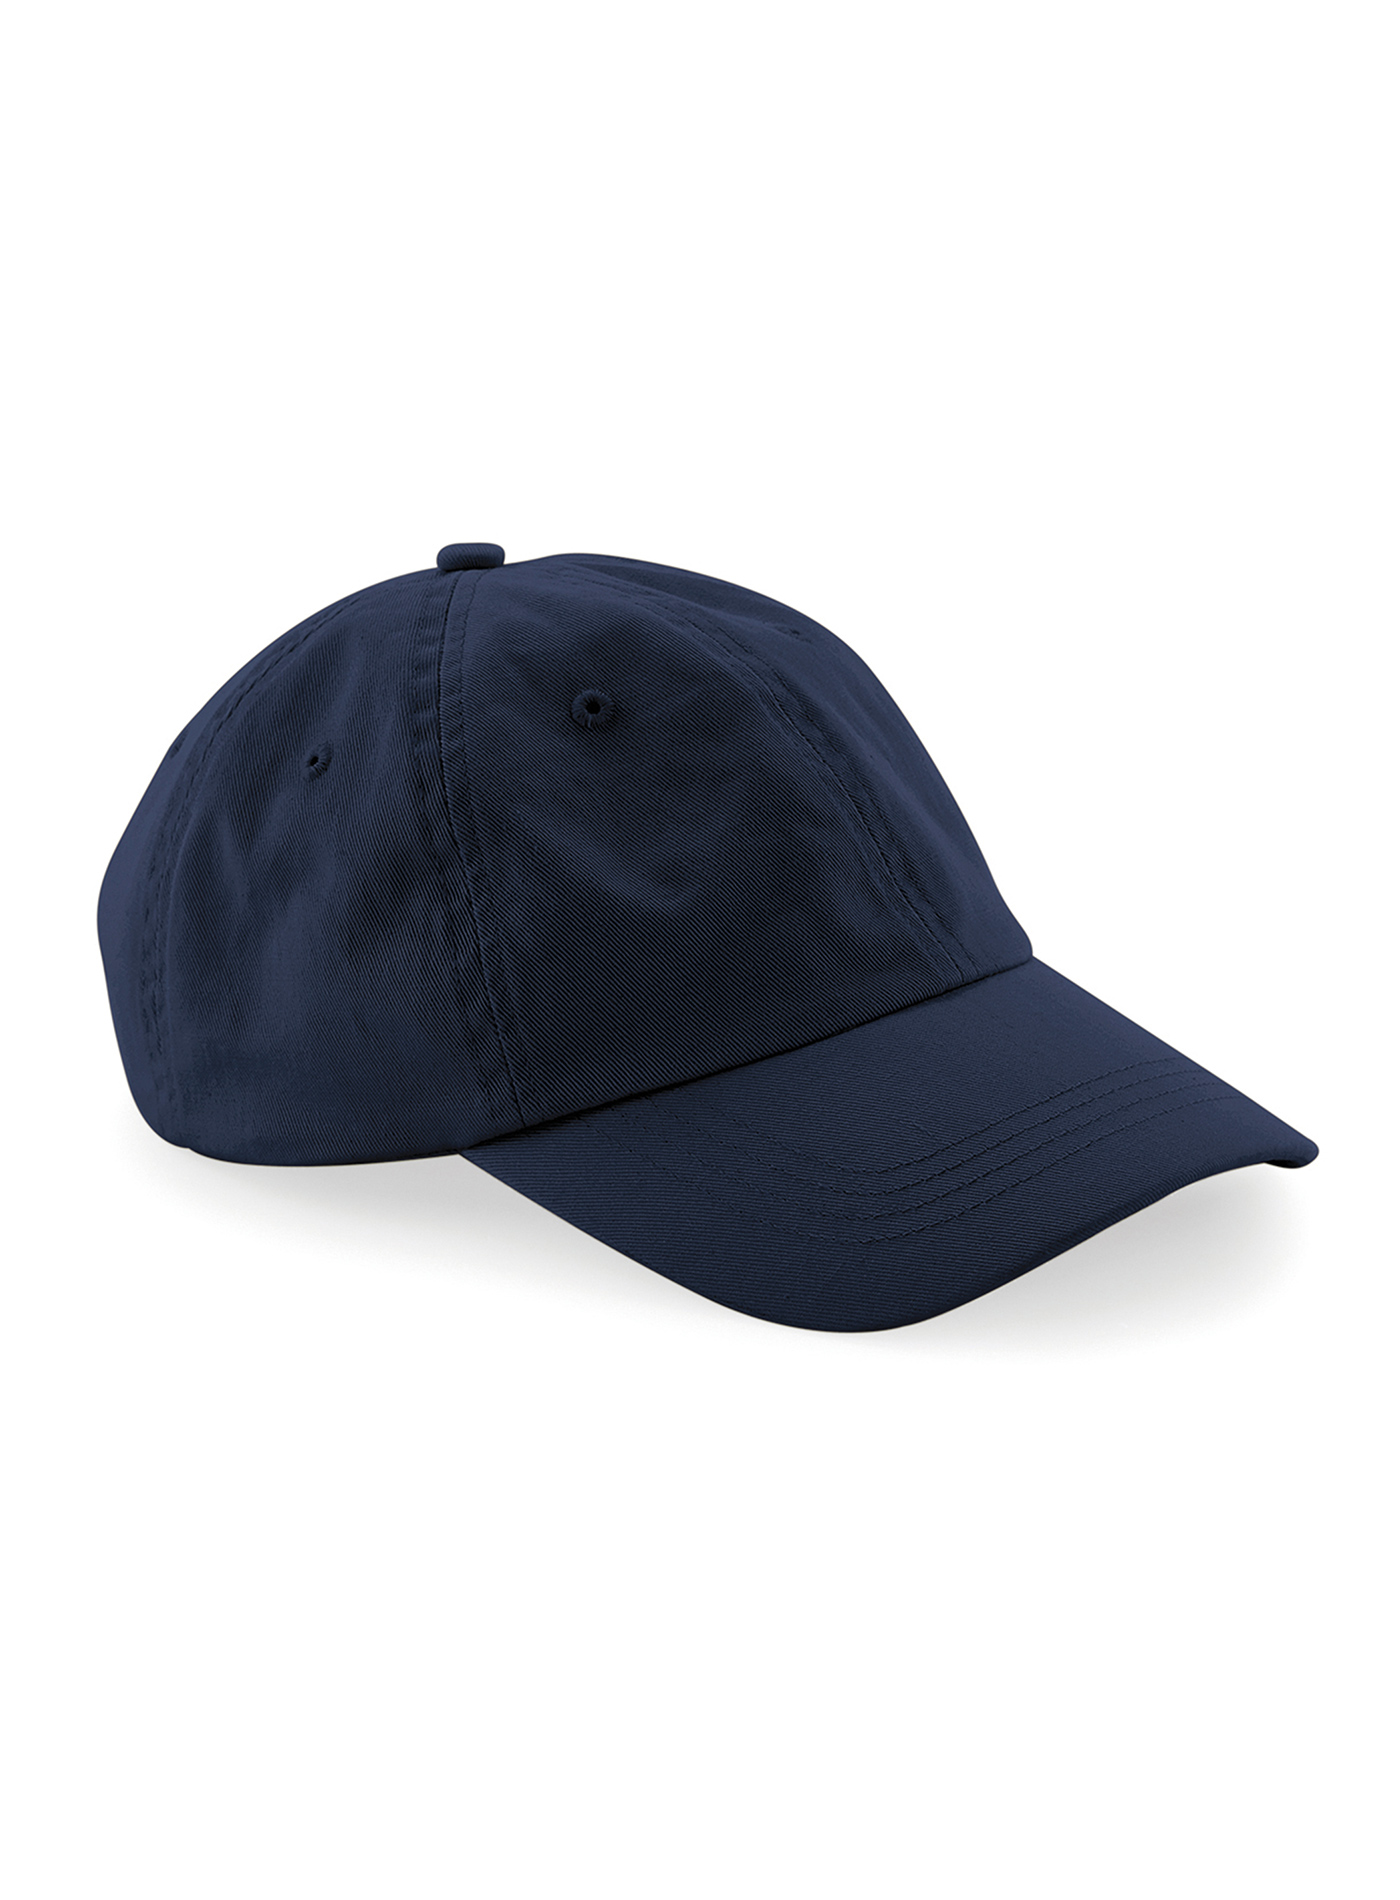 Čepice s nízkým profilem 6 dílná Beechfield - Námořnická modrá univerzal